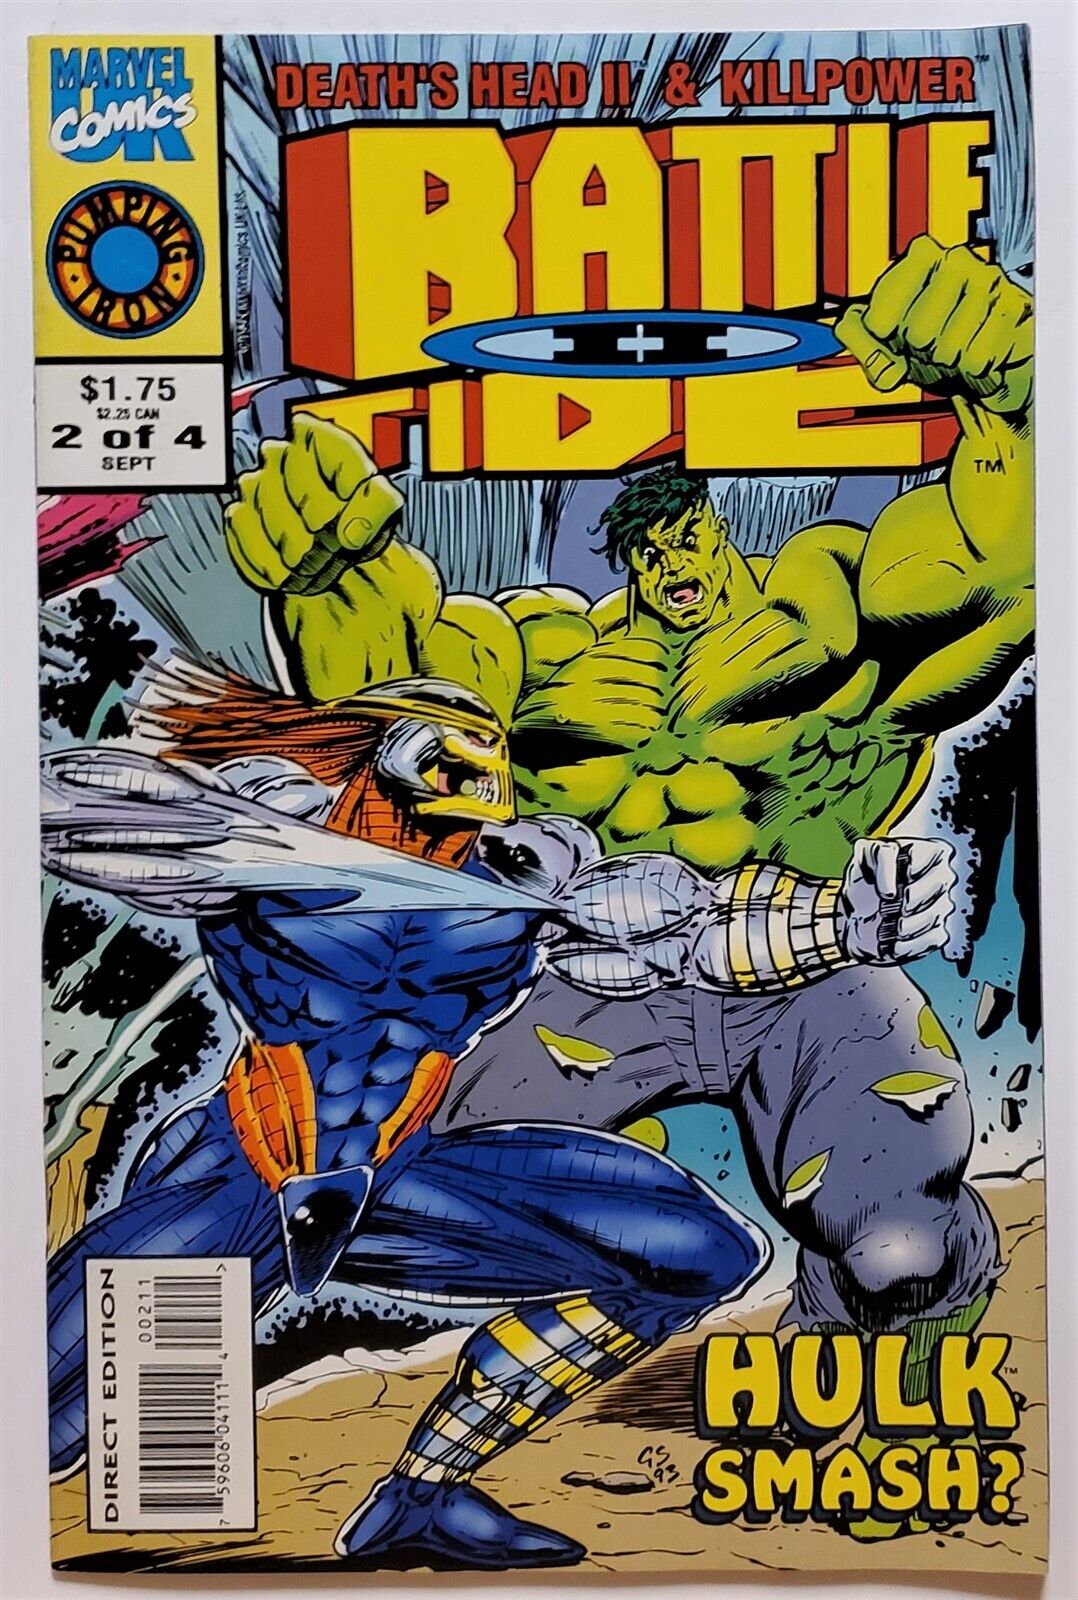 Battletide II #2 (Sep 1993, Marvel) FN 